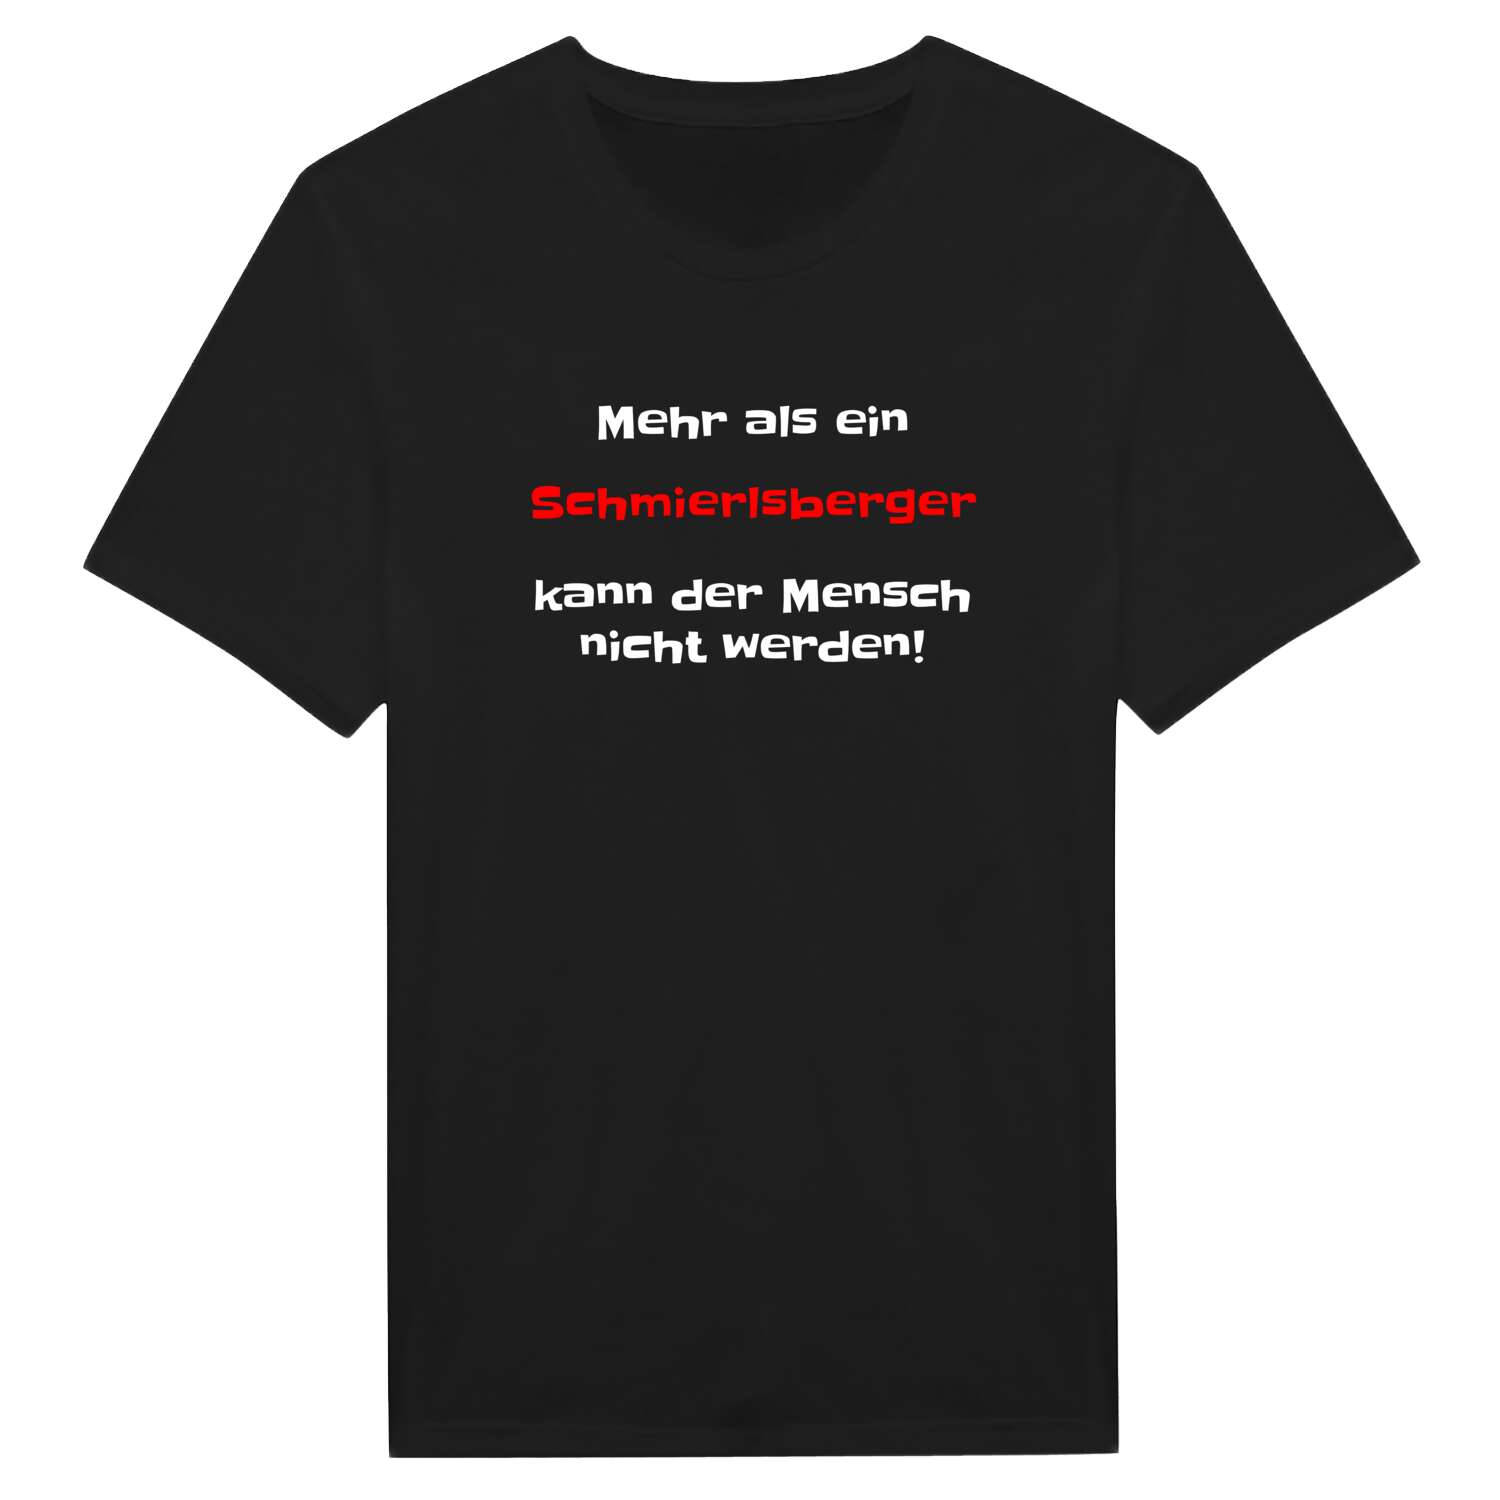 Schmierlsberg T-Shirt »Mehr als ein«